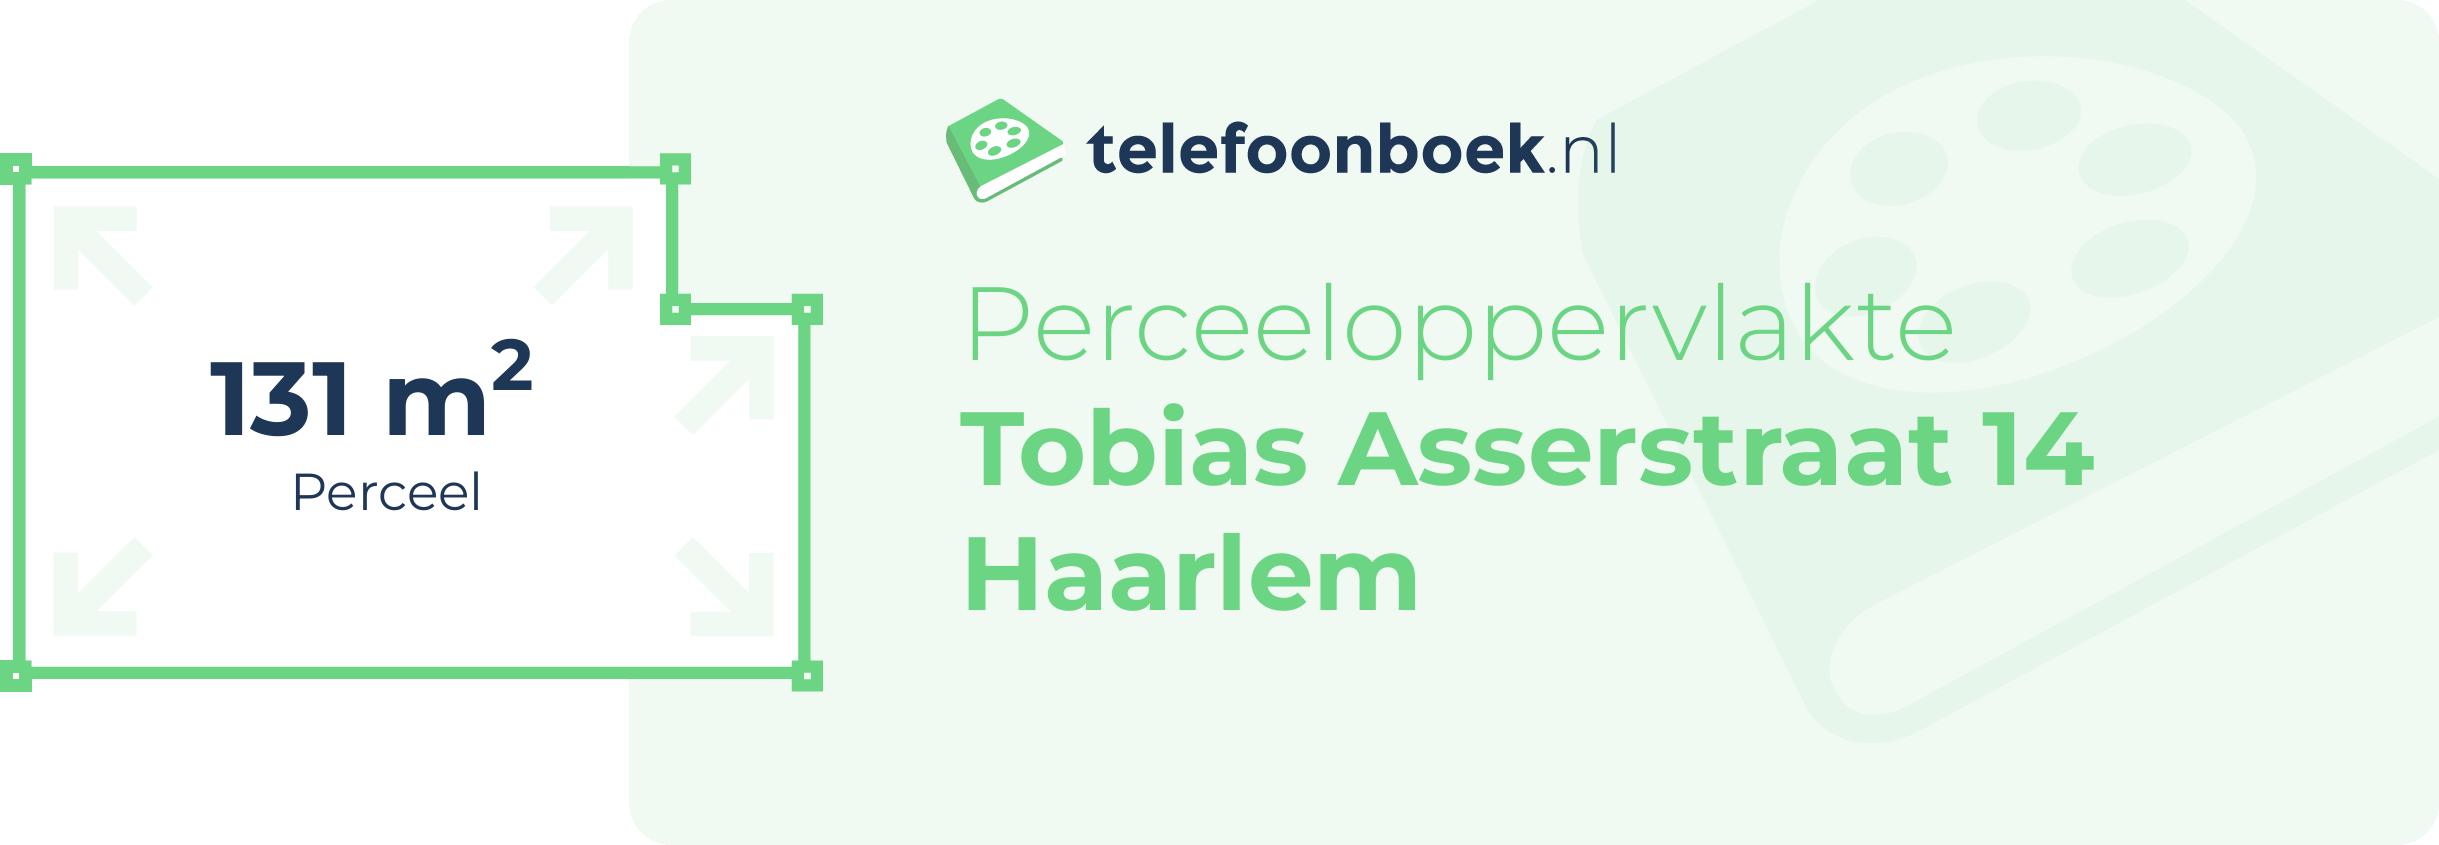 Perceeloppervlakte Tobias Asserstraat 14 Haarlem